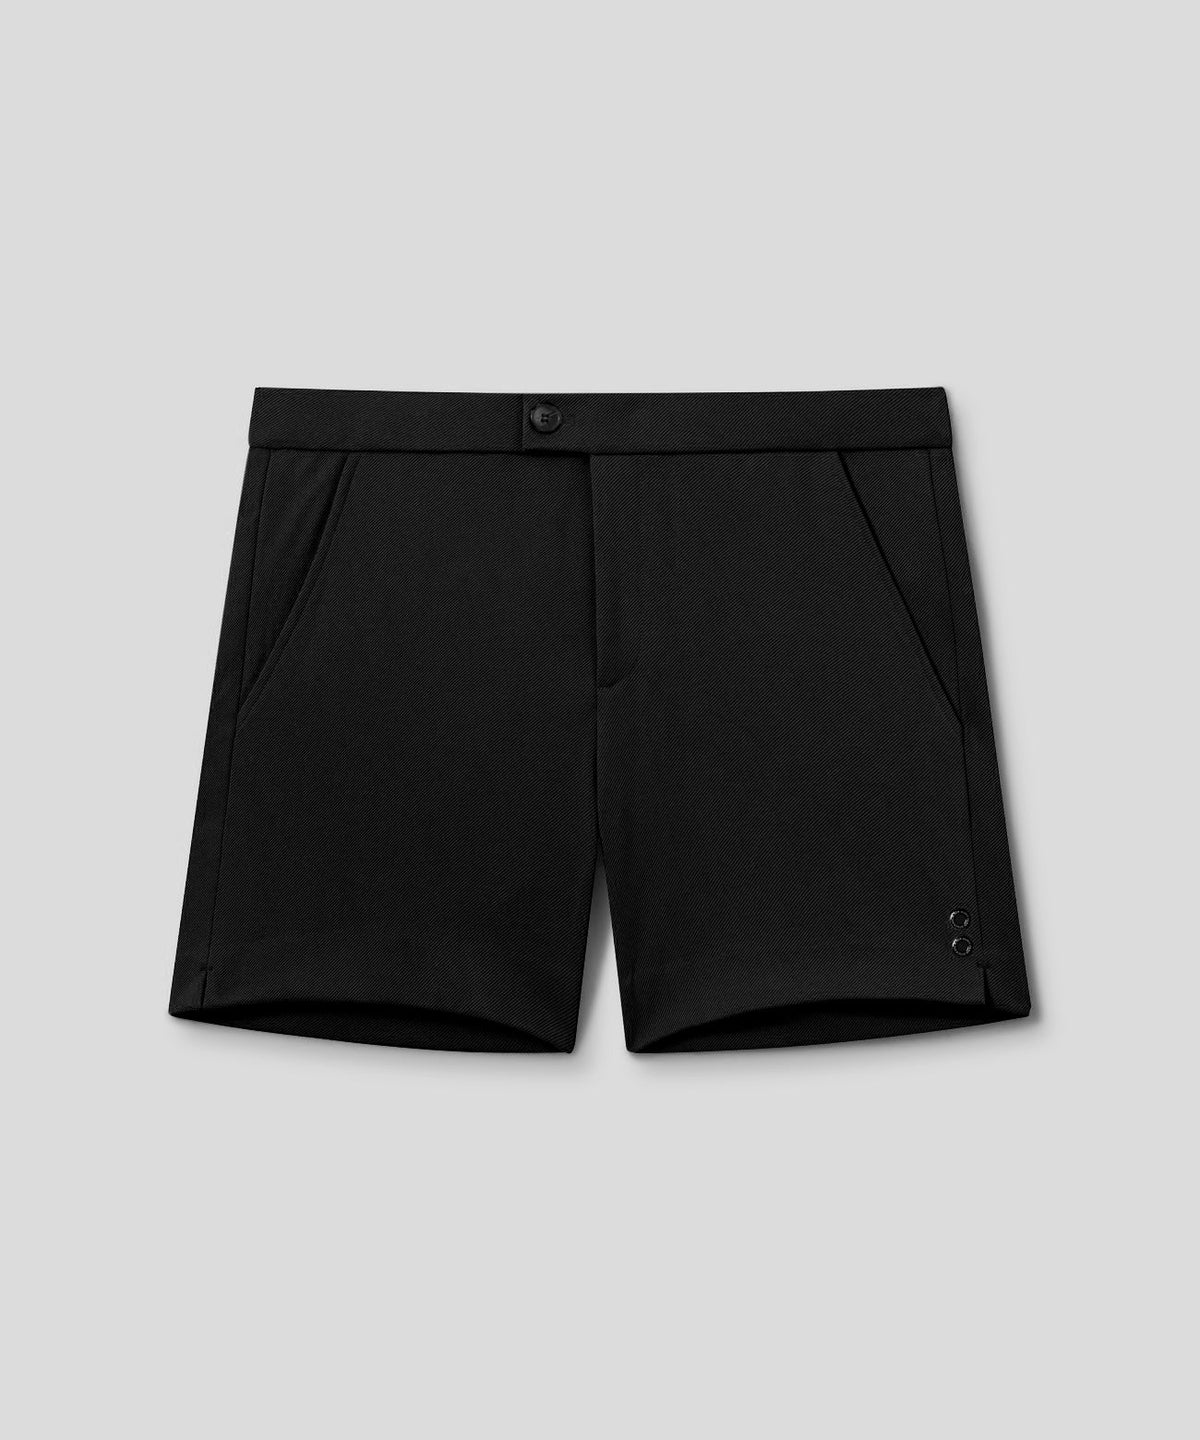 RD Tennis Shorts: Black